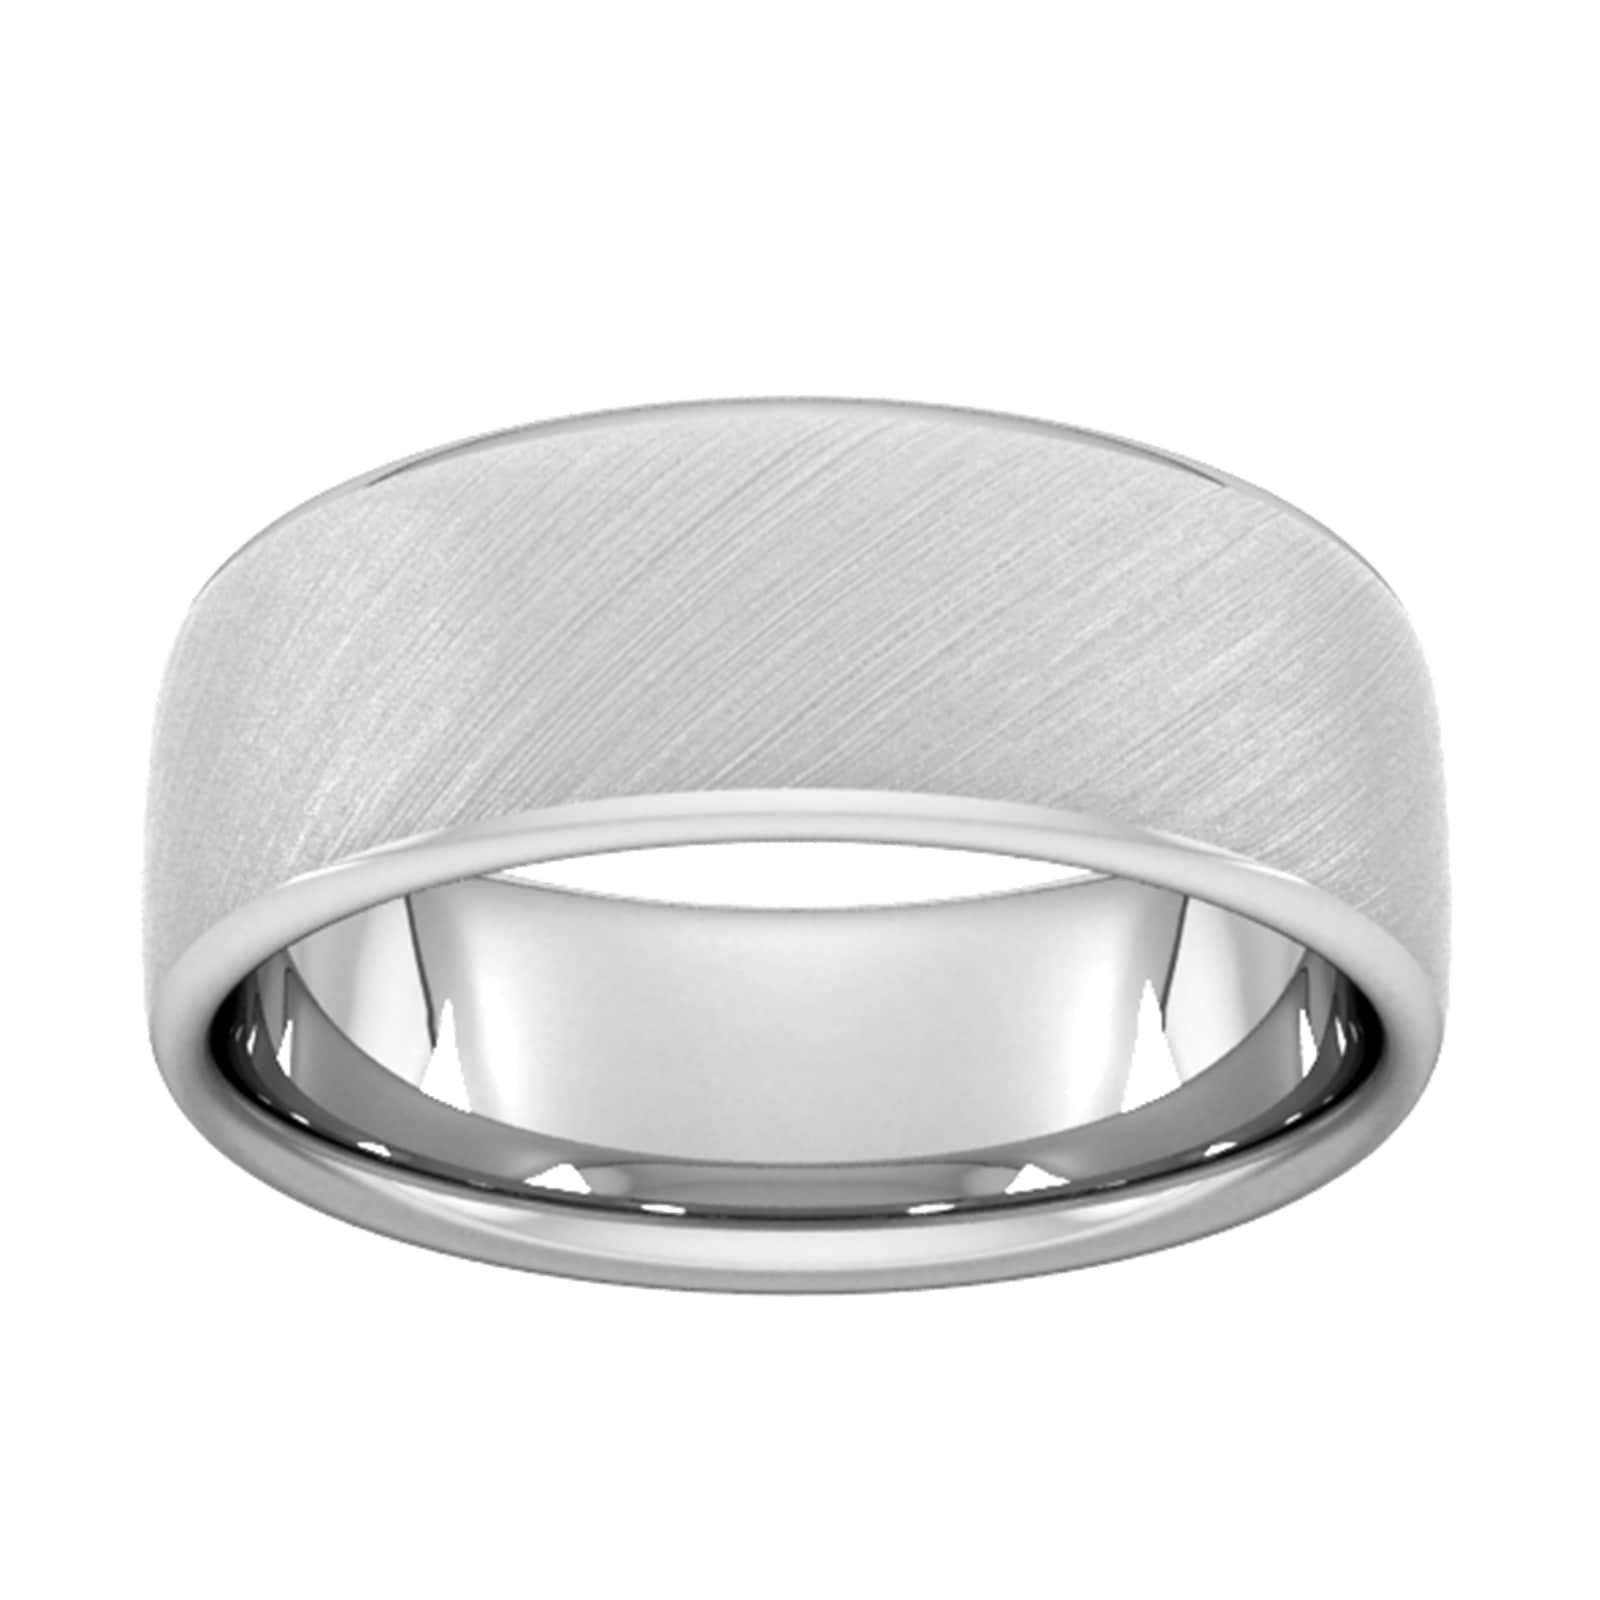 8mm Traditional Court Heavy Diagonal Matt Finish Wedding Ring In 950 Palladium - Ring Size X